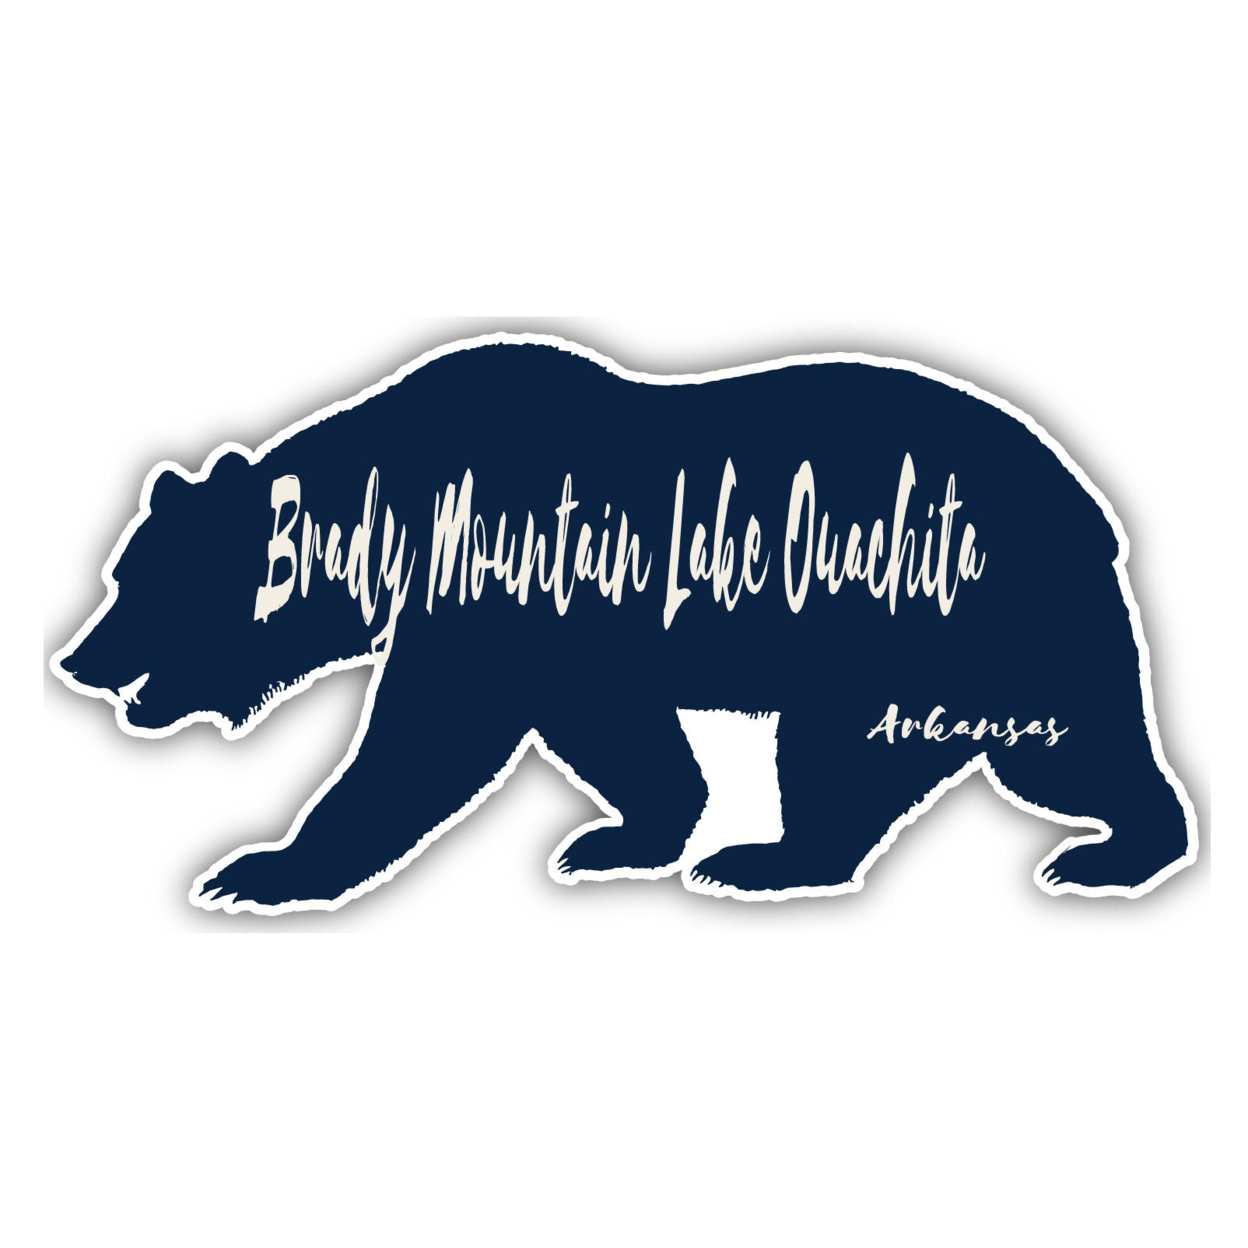 Brady Mountain Lake Ouachita Arkansas Souvenir Decorative Stickers (Choose Theme And Size) - Single Unit, 12-Inch, Tent